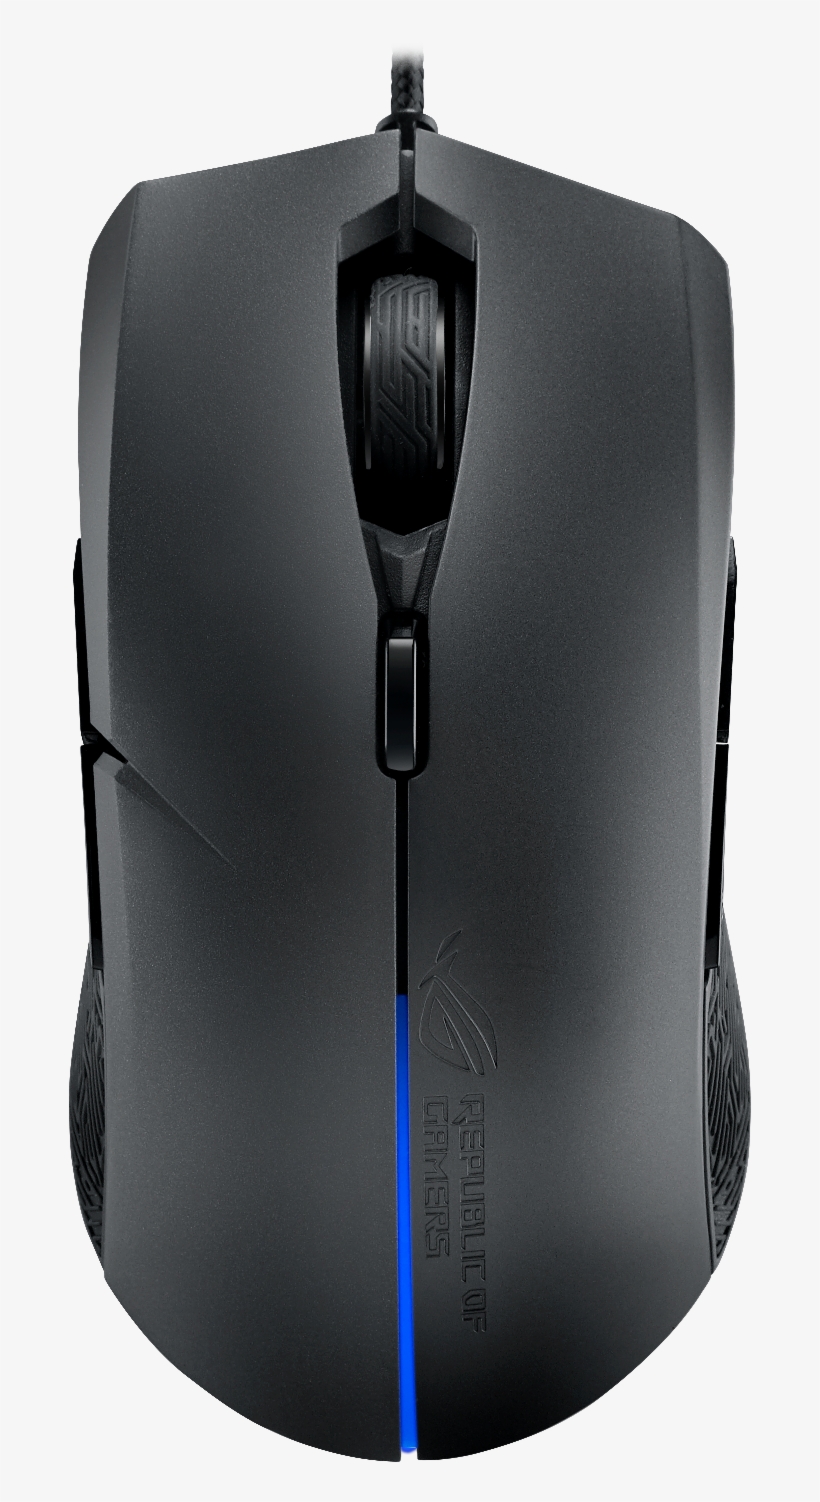 Asus Rog Strix Evolve Aura - Asus Rog Strix Evolve Optical Gaming Mouse, transparent png #5171180